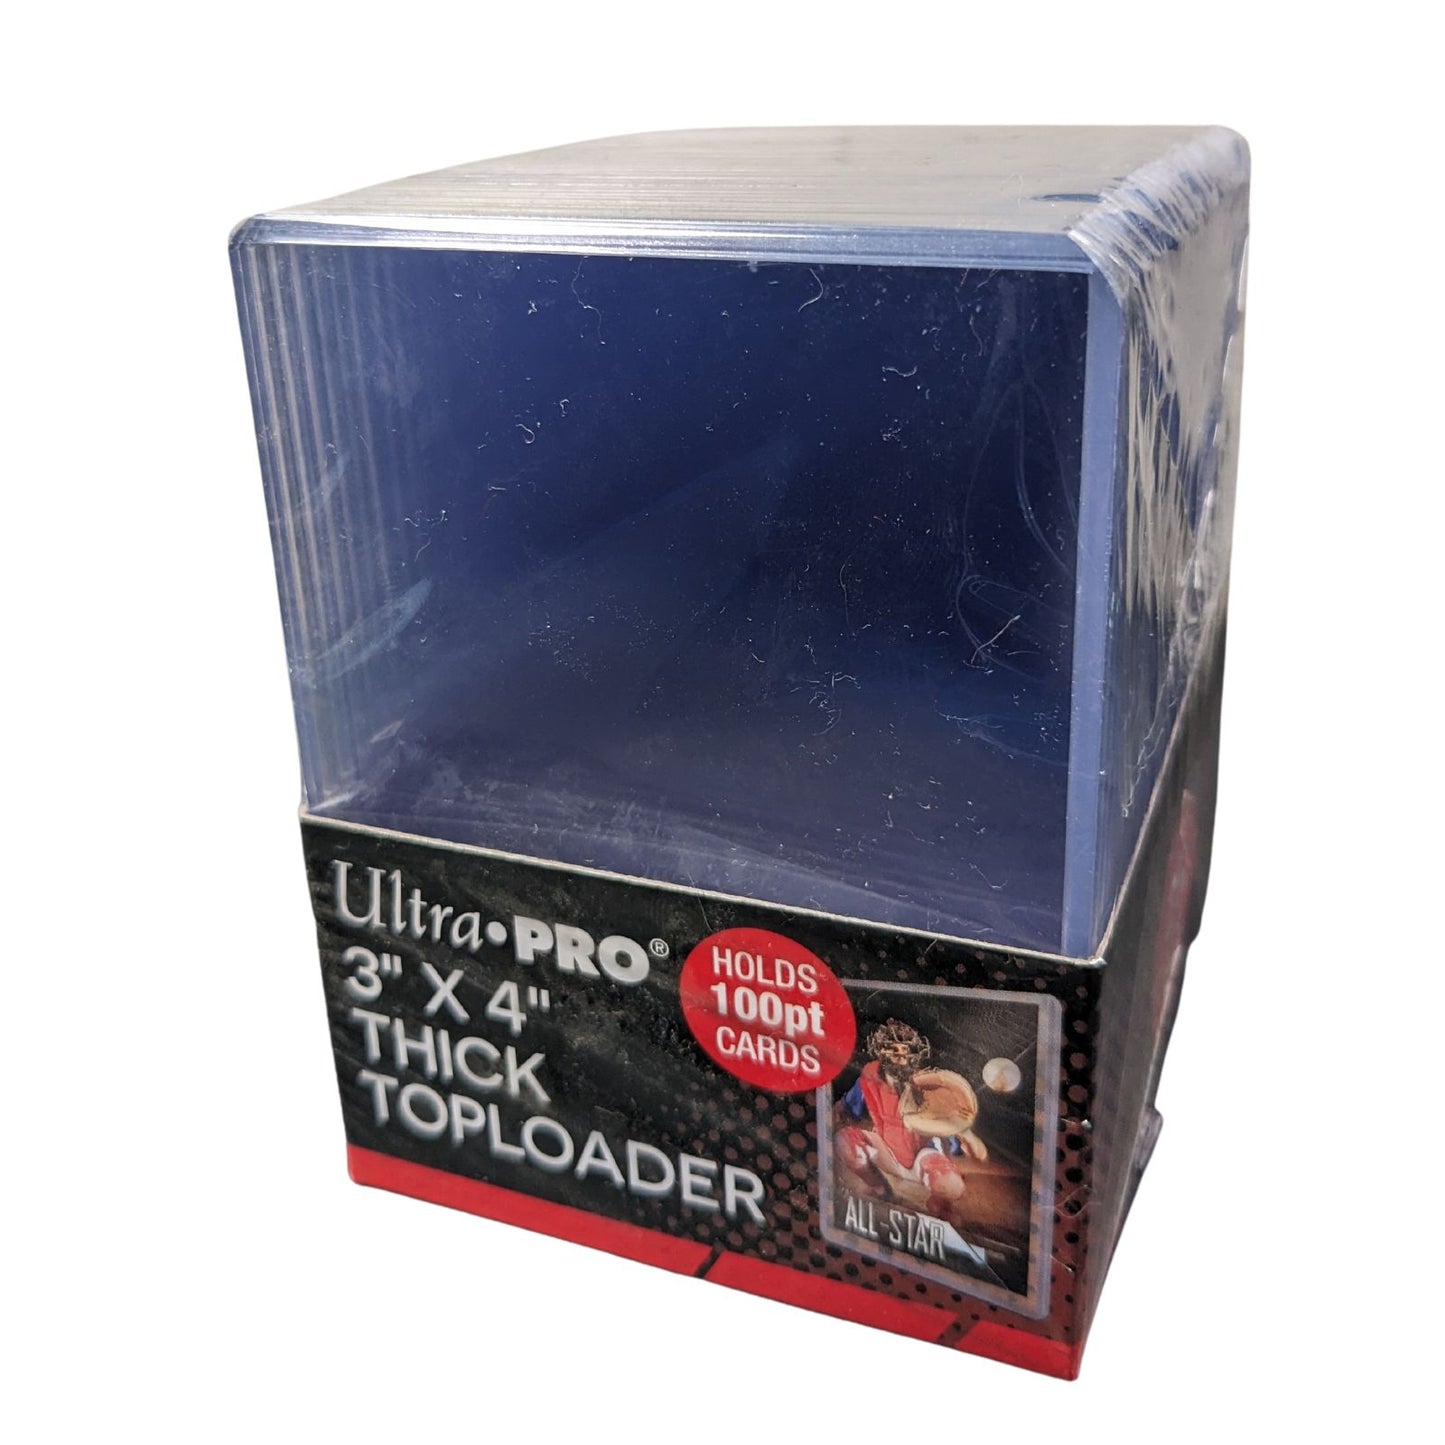 100pt Ultra Pro Toploaders épais 3x4 pouces, paquet de 25